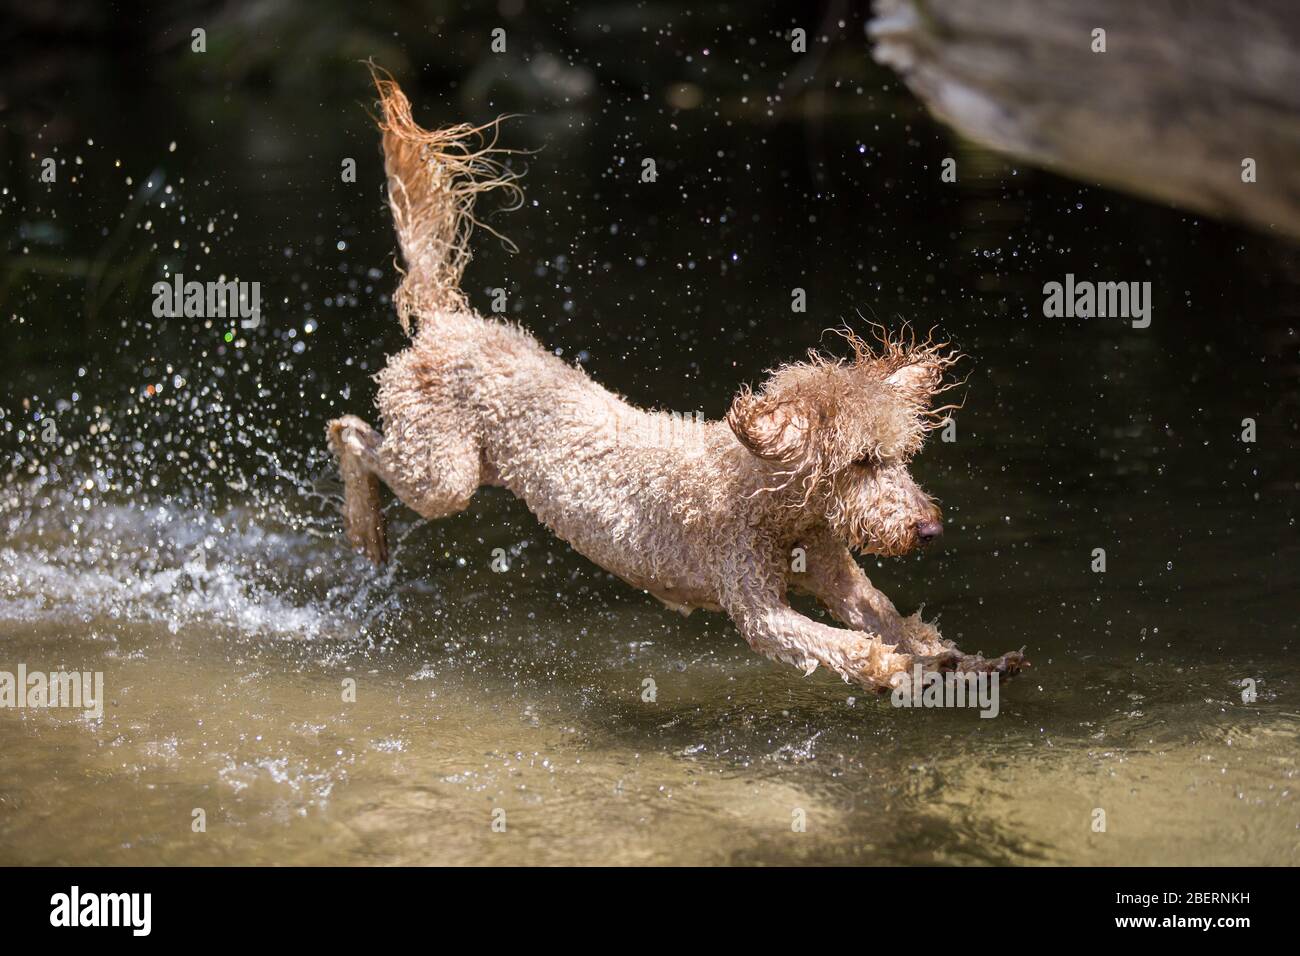 Porträt eines jungen Pudelhundes.kraftvoller Hund springt mit Spritzern ins Wasser und hat an einem sonnigen Tag, Leitha, Österreich, Spaß im Fluss Stockfoto